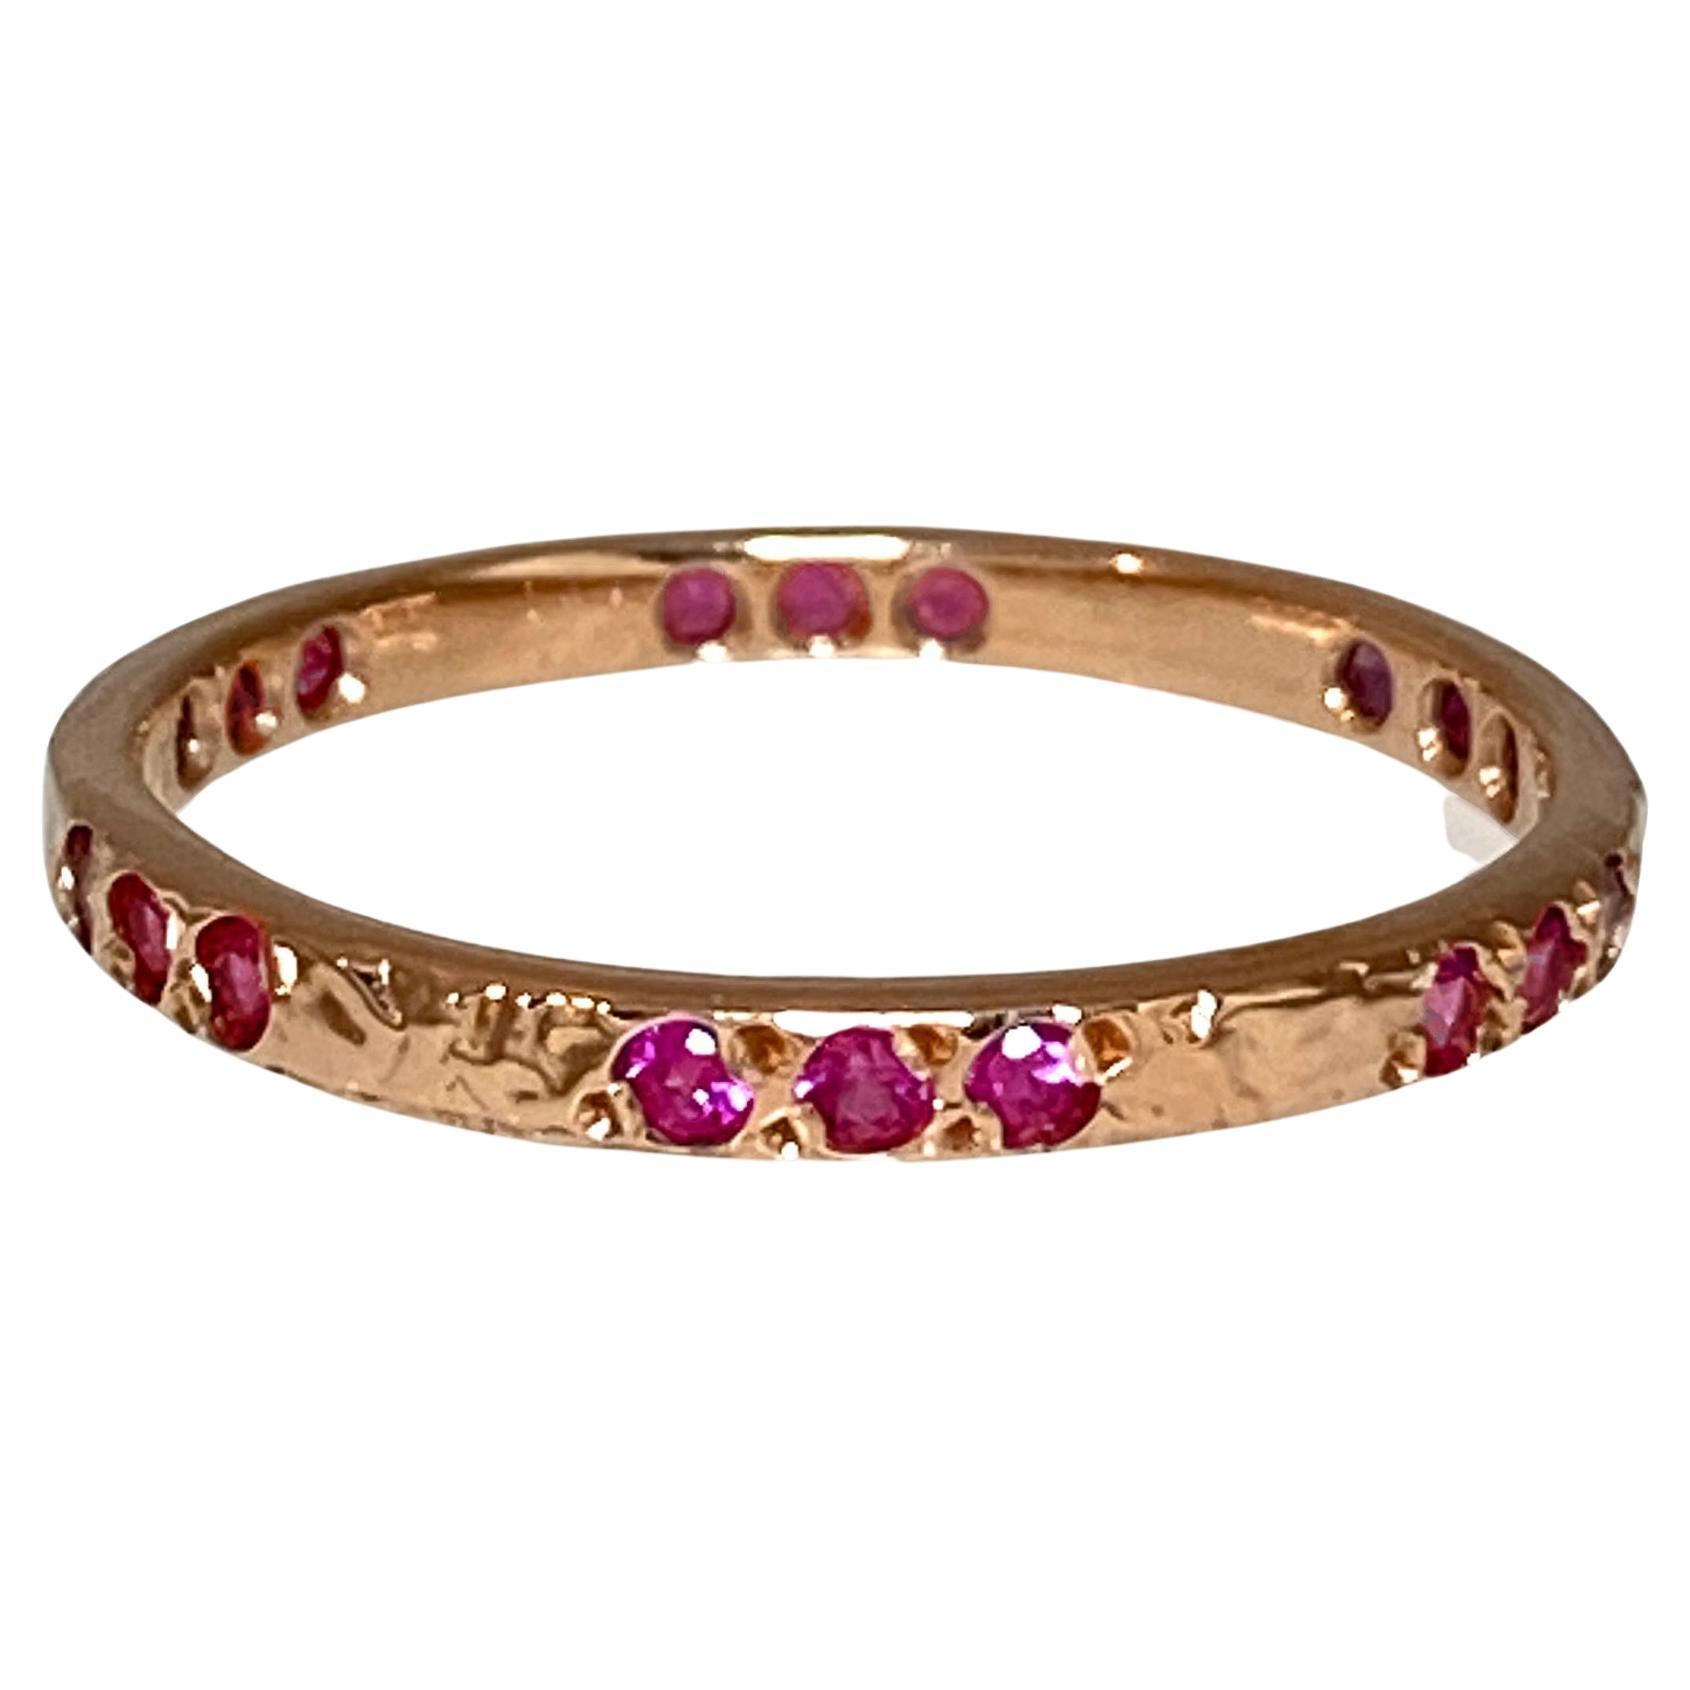 Pink Sapphire set in Textured 14 Karat Rose Gold Band from K.MITA - Large